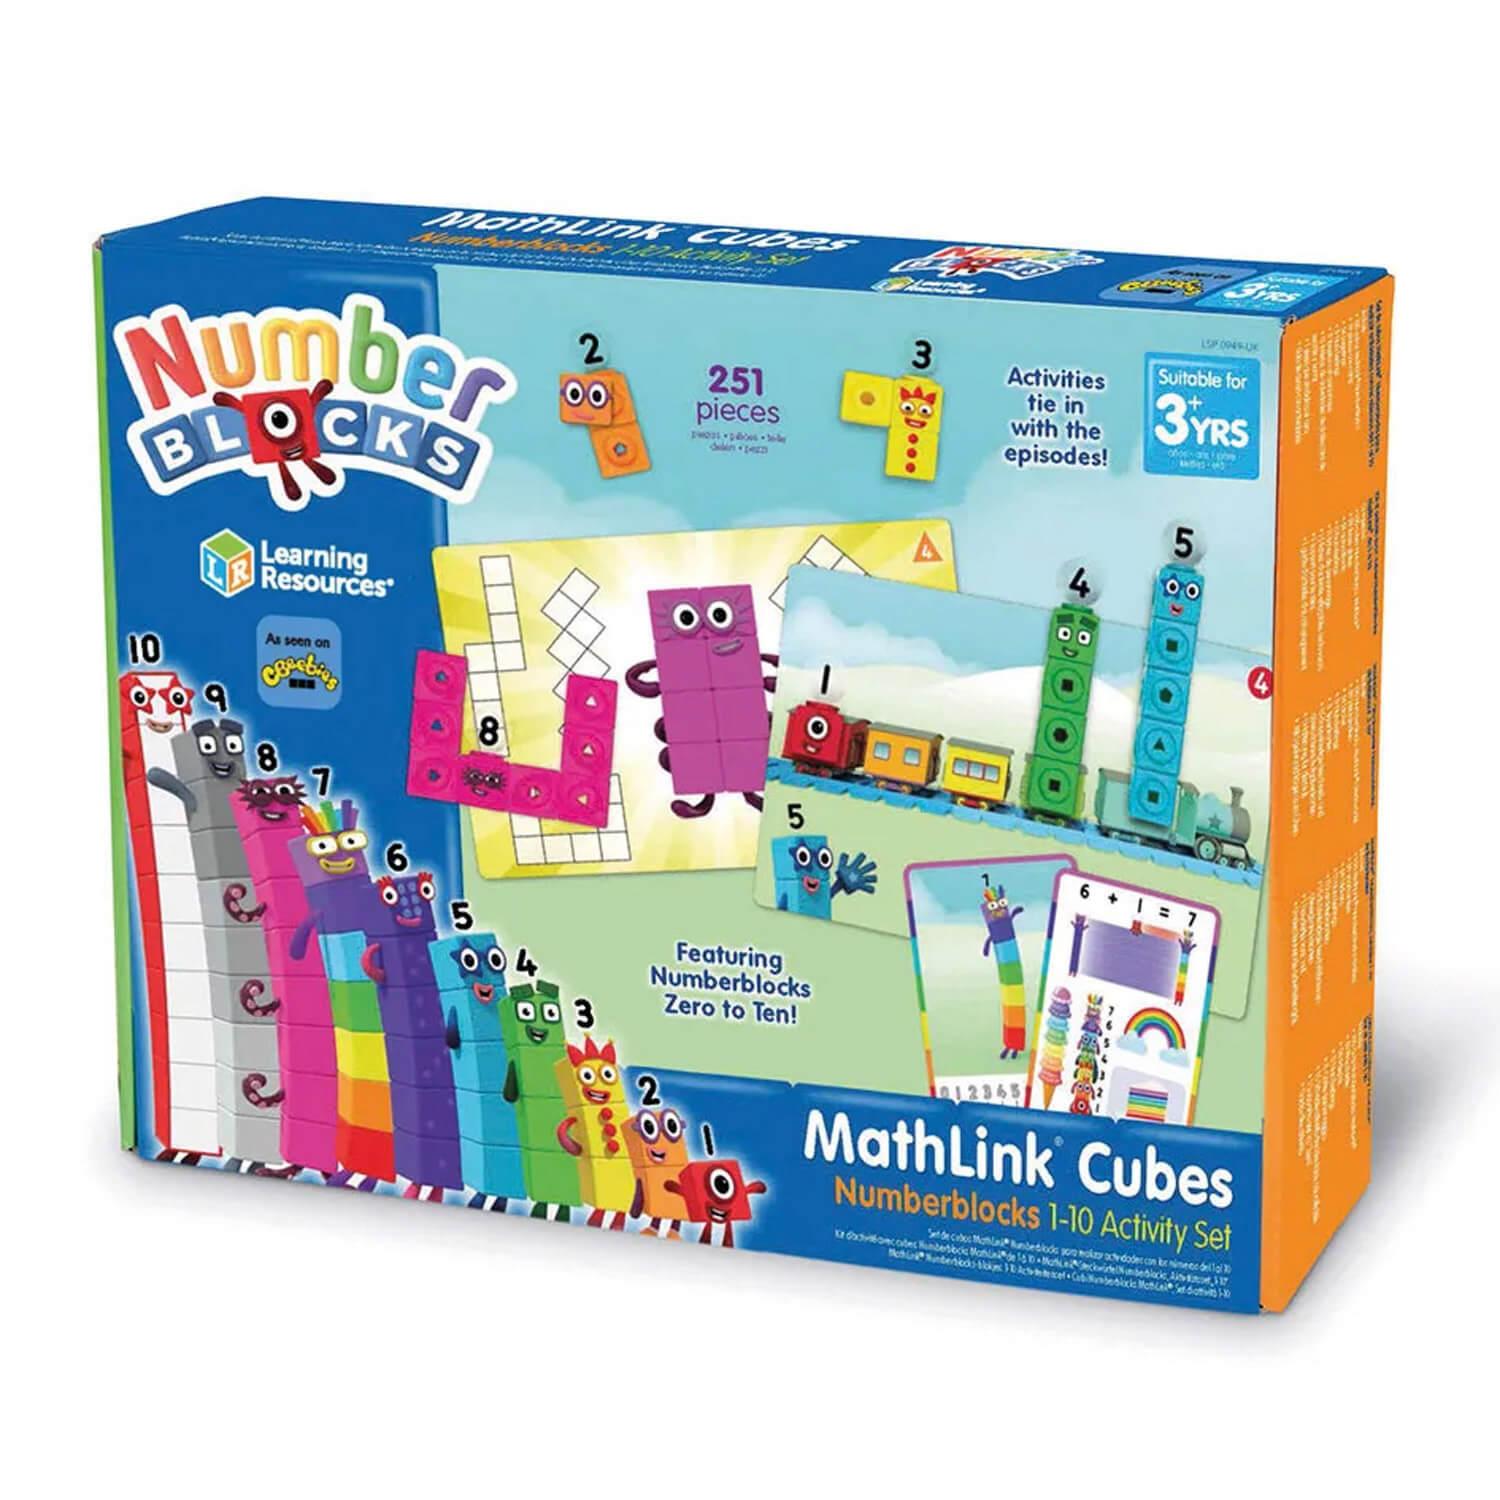 Kit d?activités avec cubes MathLink Numberblocks de 1 à 10